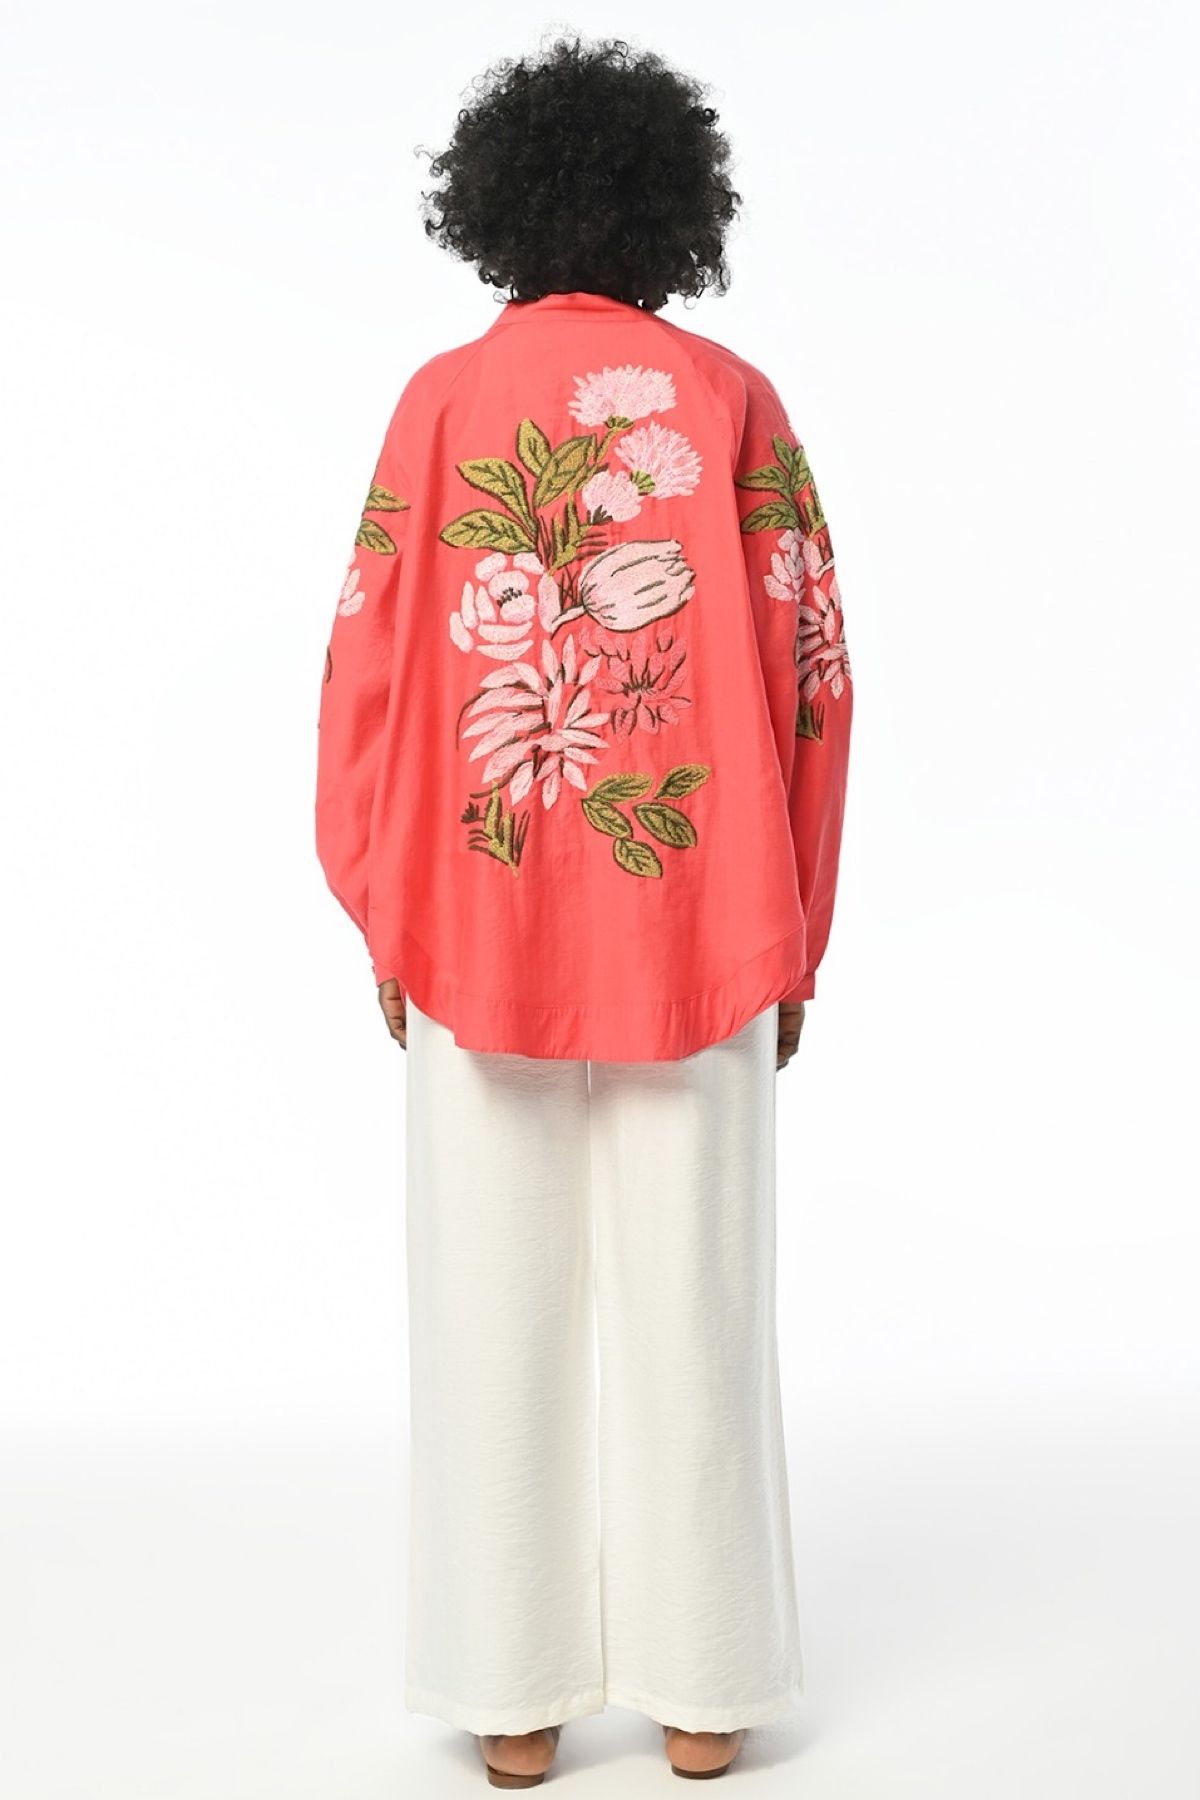 FEMELLE Kadın Mercan Sırtı Ve Kolları Çiçek Nakış İşlemeli Standart Beden Oversize Kimono Ceket